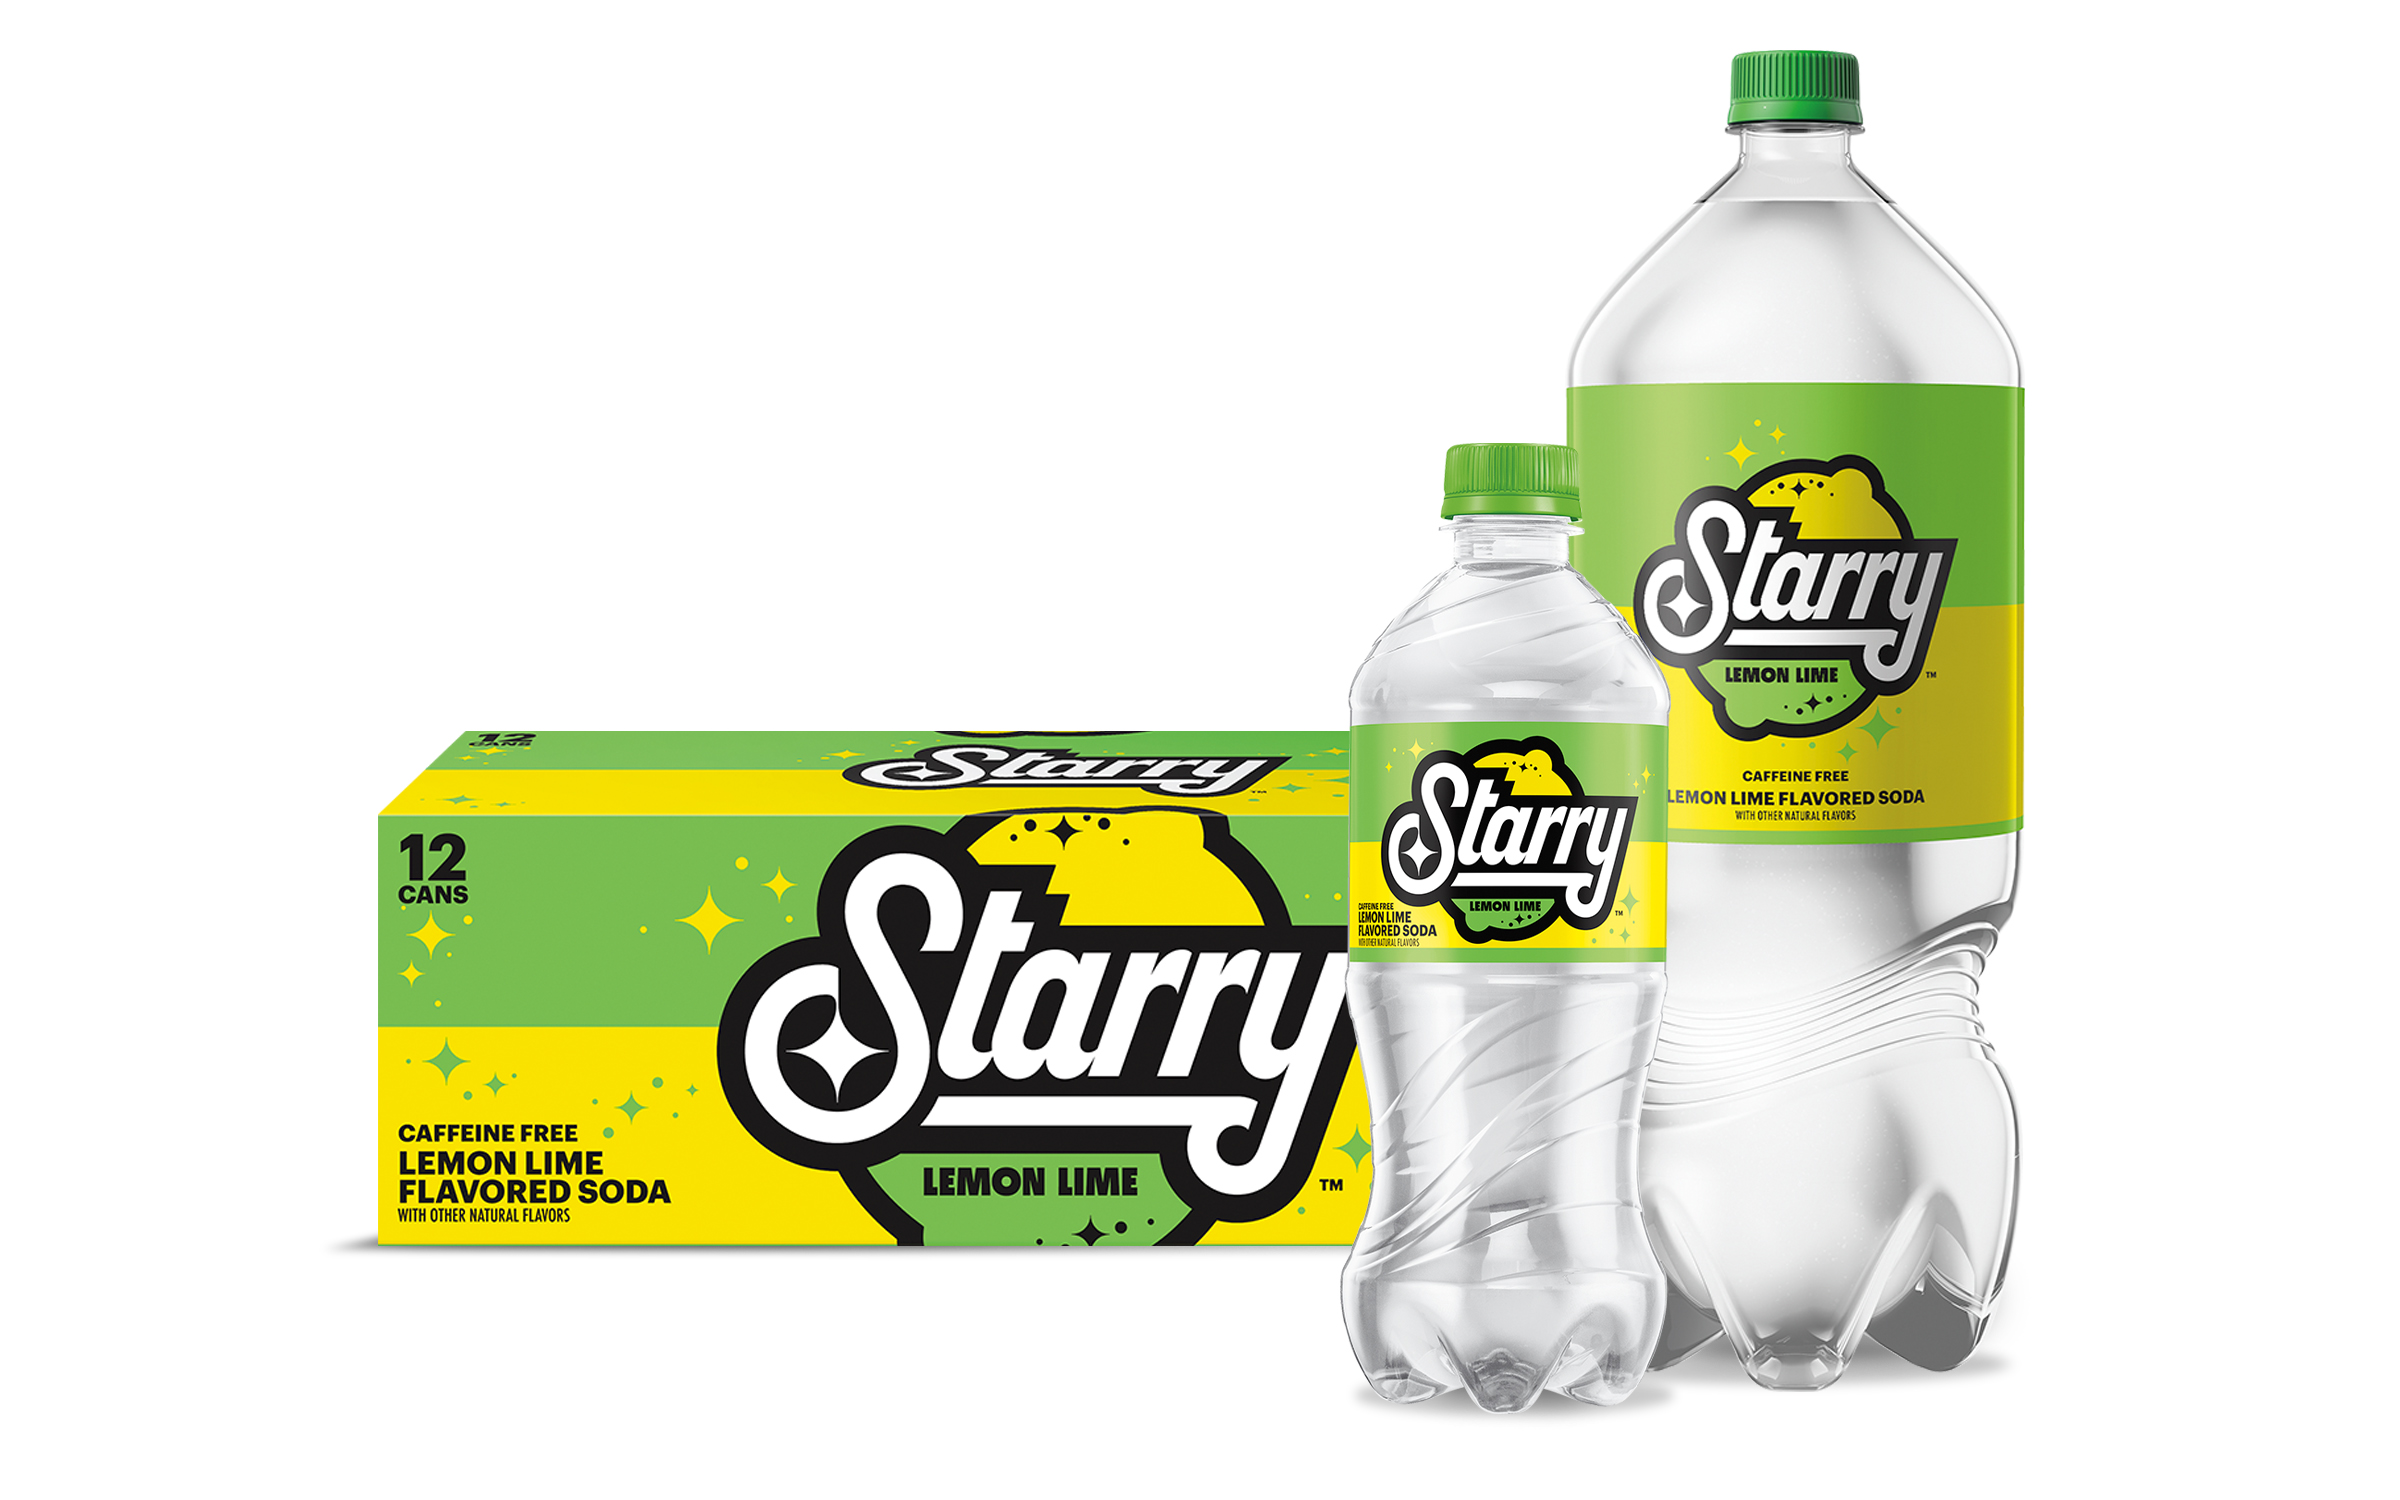 Starry Lemon Lime soda 12-pack, 2-liter, and 16 oz bottle